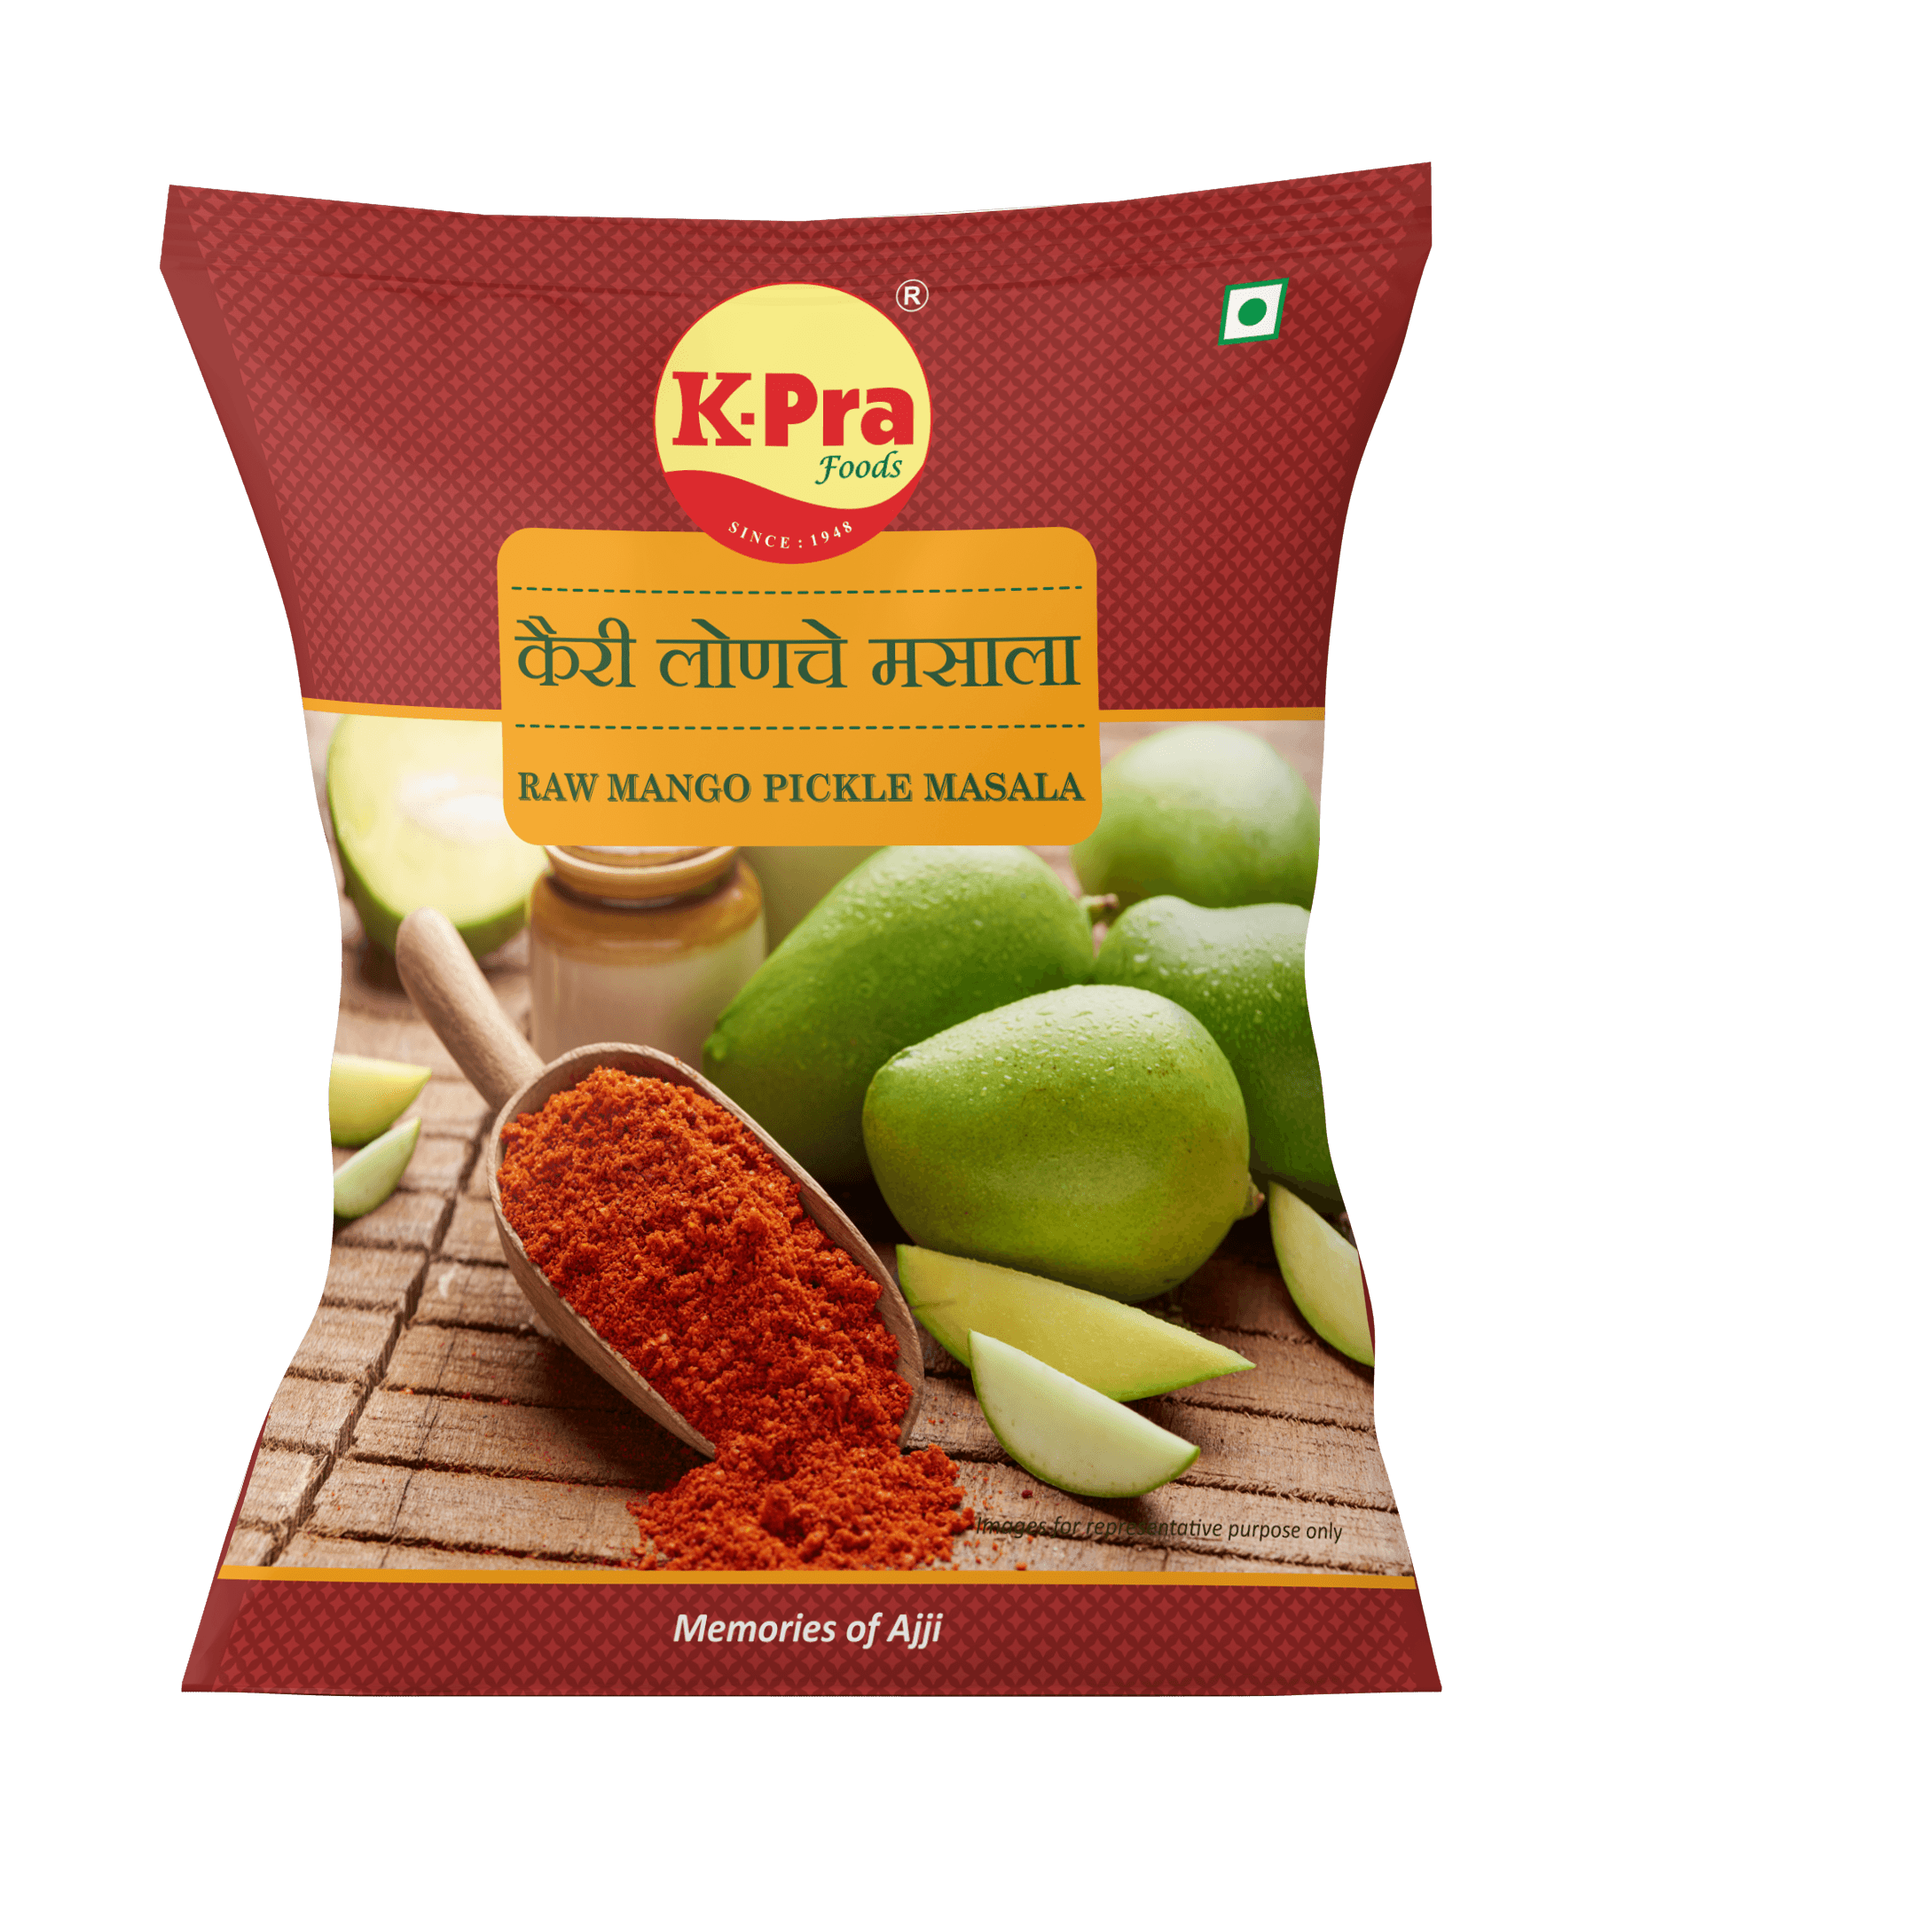 MANGO / KAIRI PICKLE MASALA - Kpra Foods Pvt. Ltd.